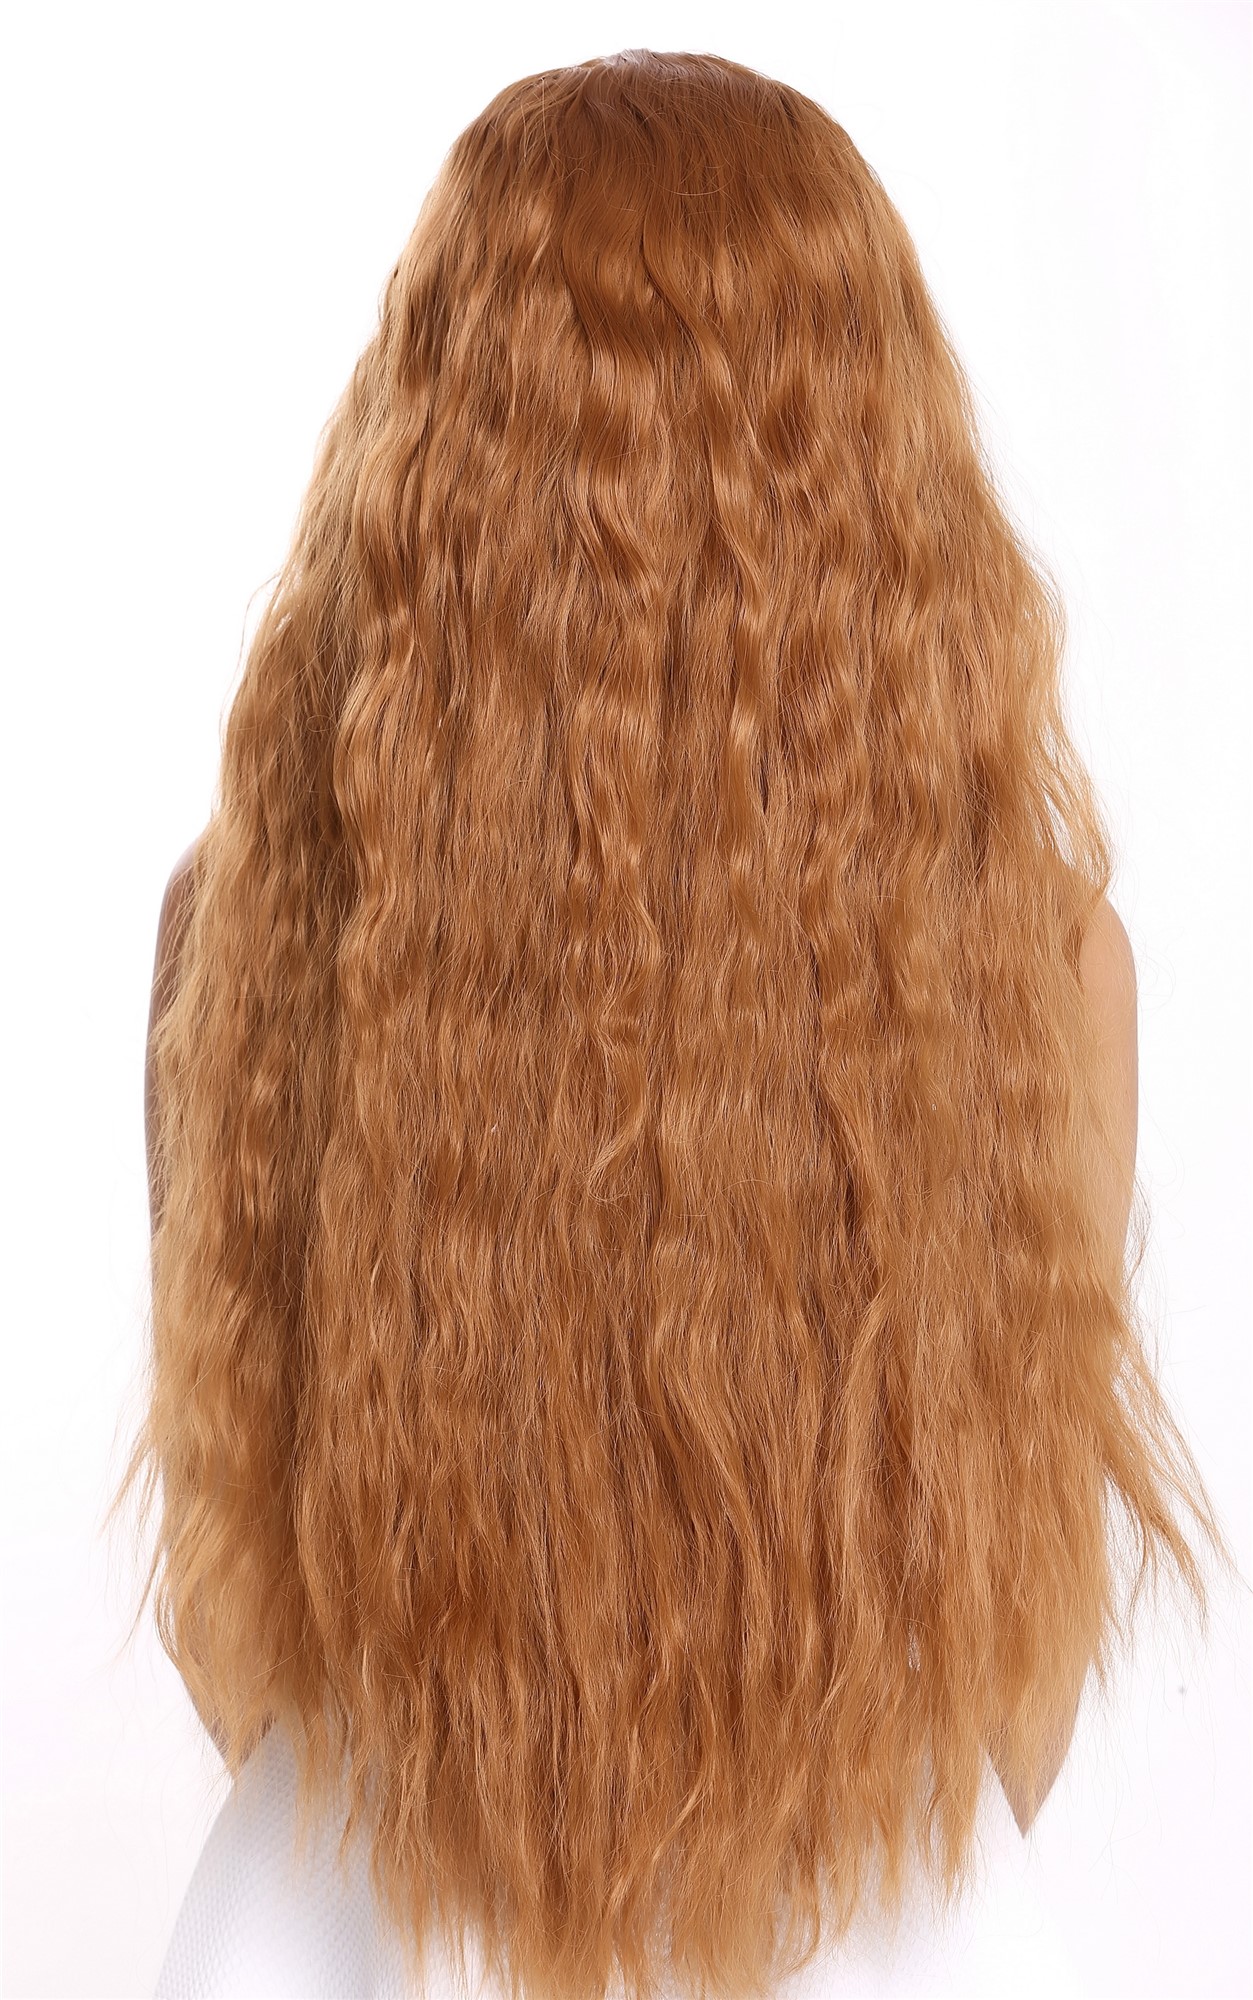 Perücke Lang Mittelscheitel Gewellt Blond Kupferblond Modell: 6083HDRESS ME  UP - Der Onlineshop für Kostüme, Perücken und Accessoires